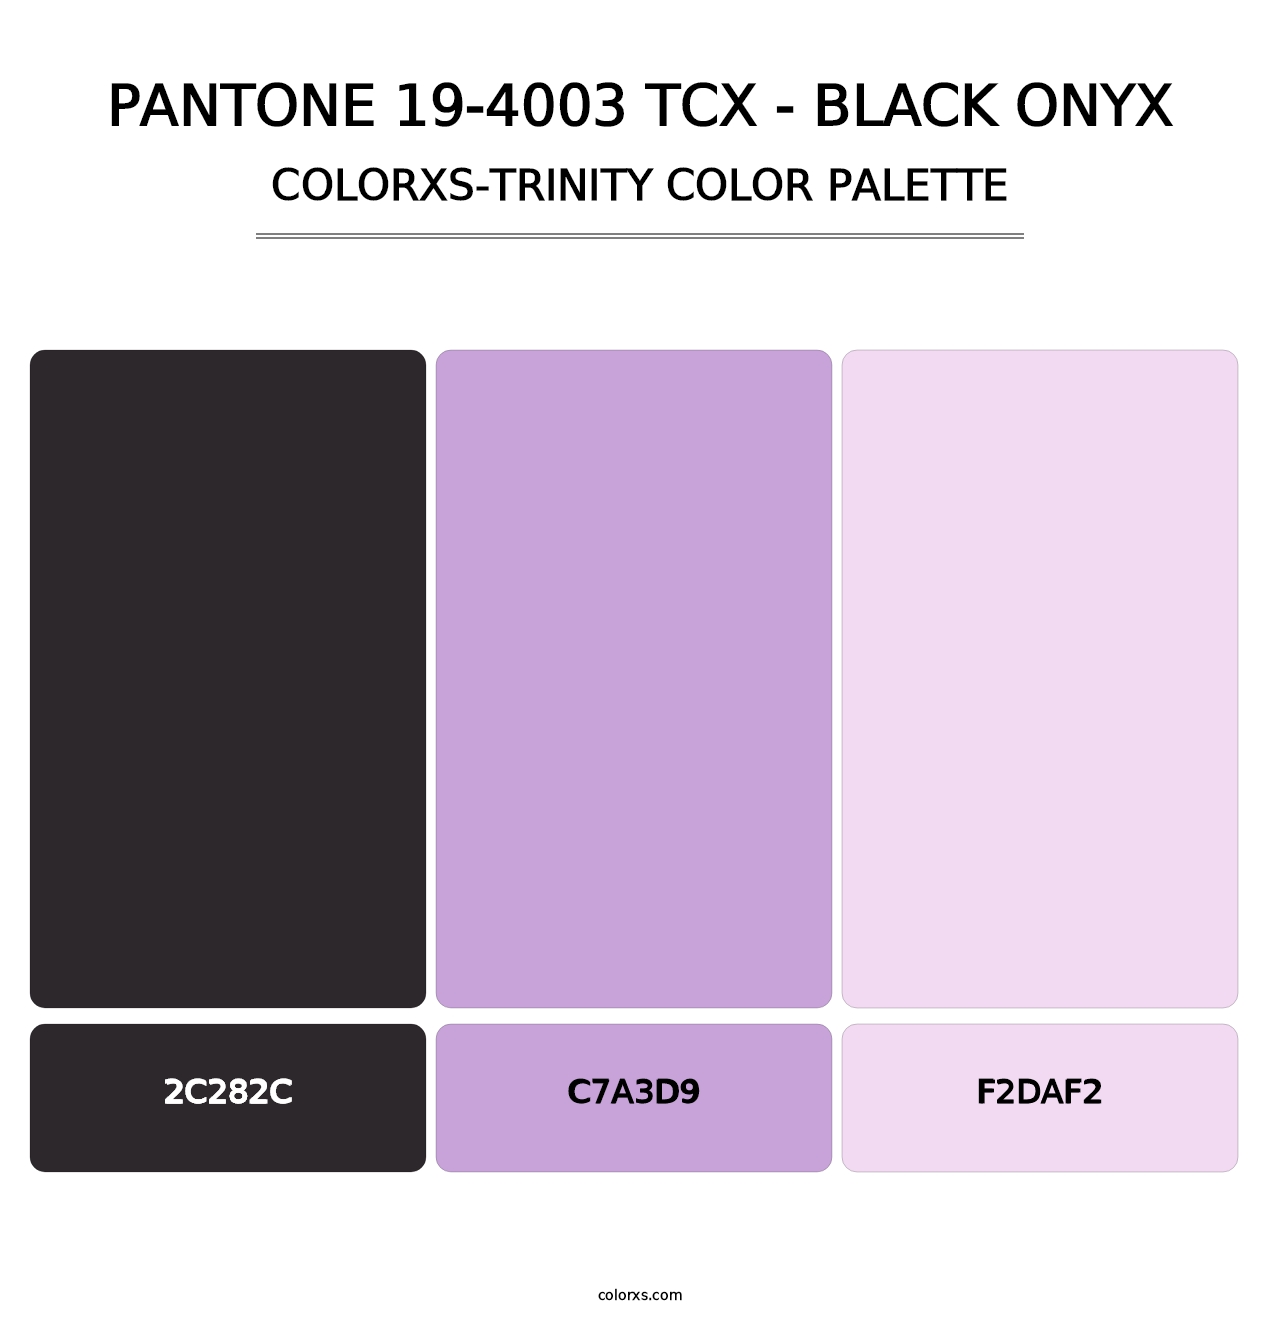 PANTONE 19-4003 TCX - Black Onyx - Colorxs Trinity Palette